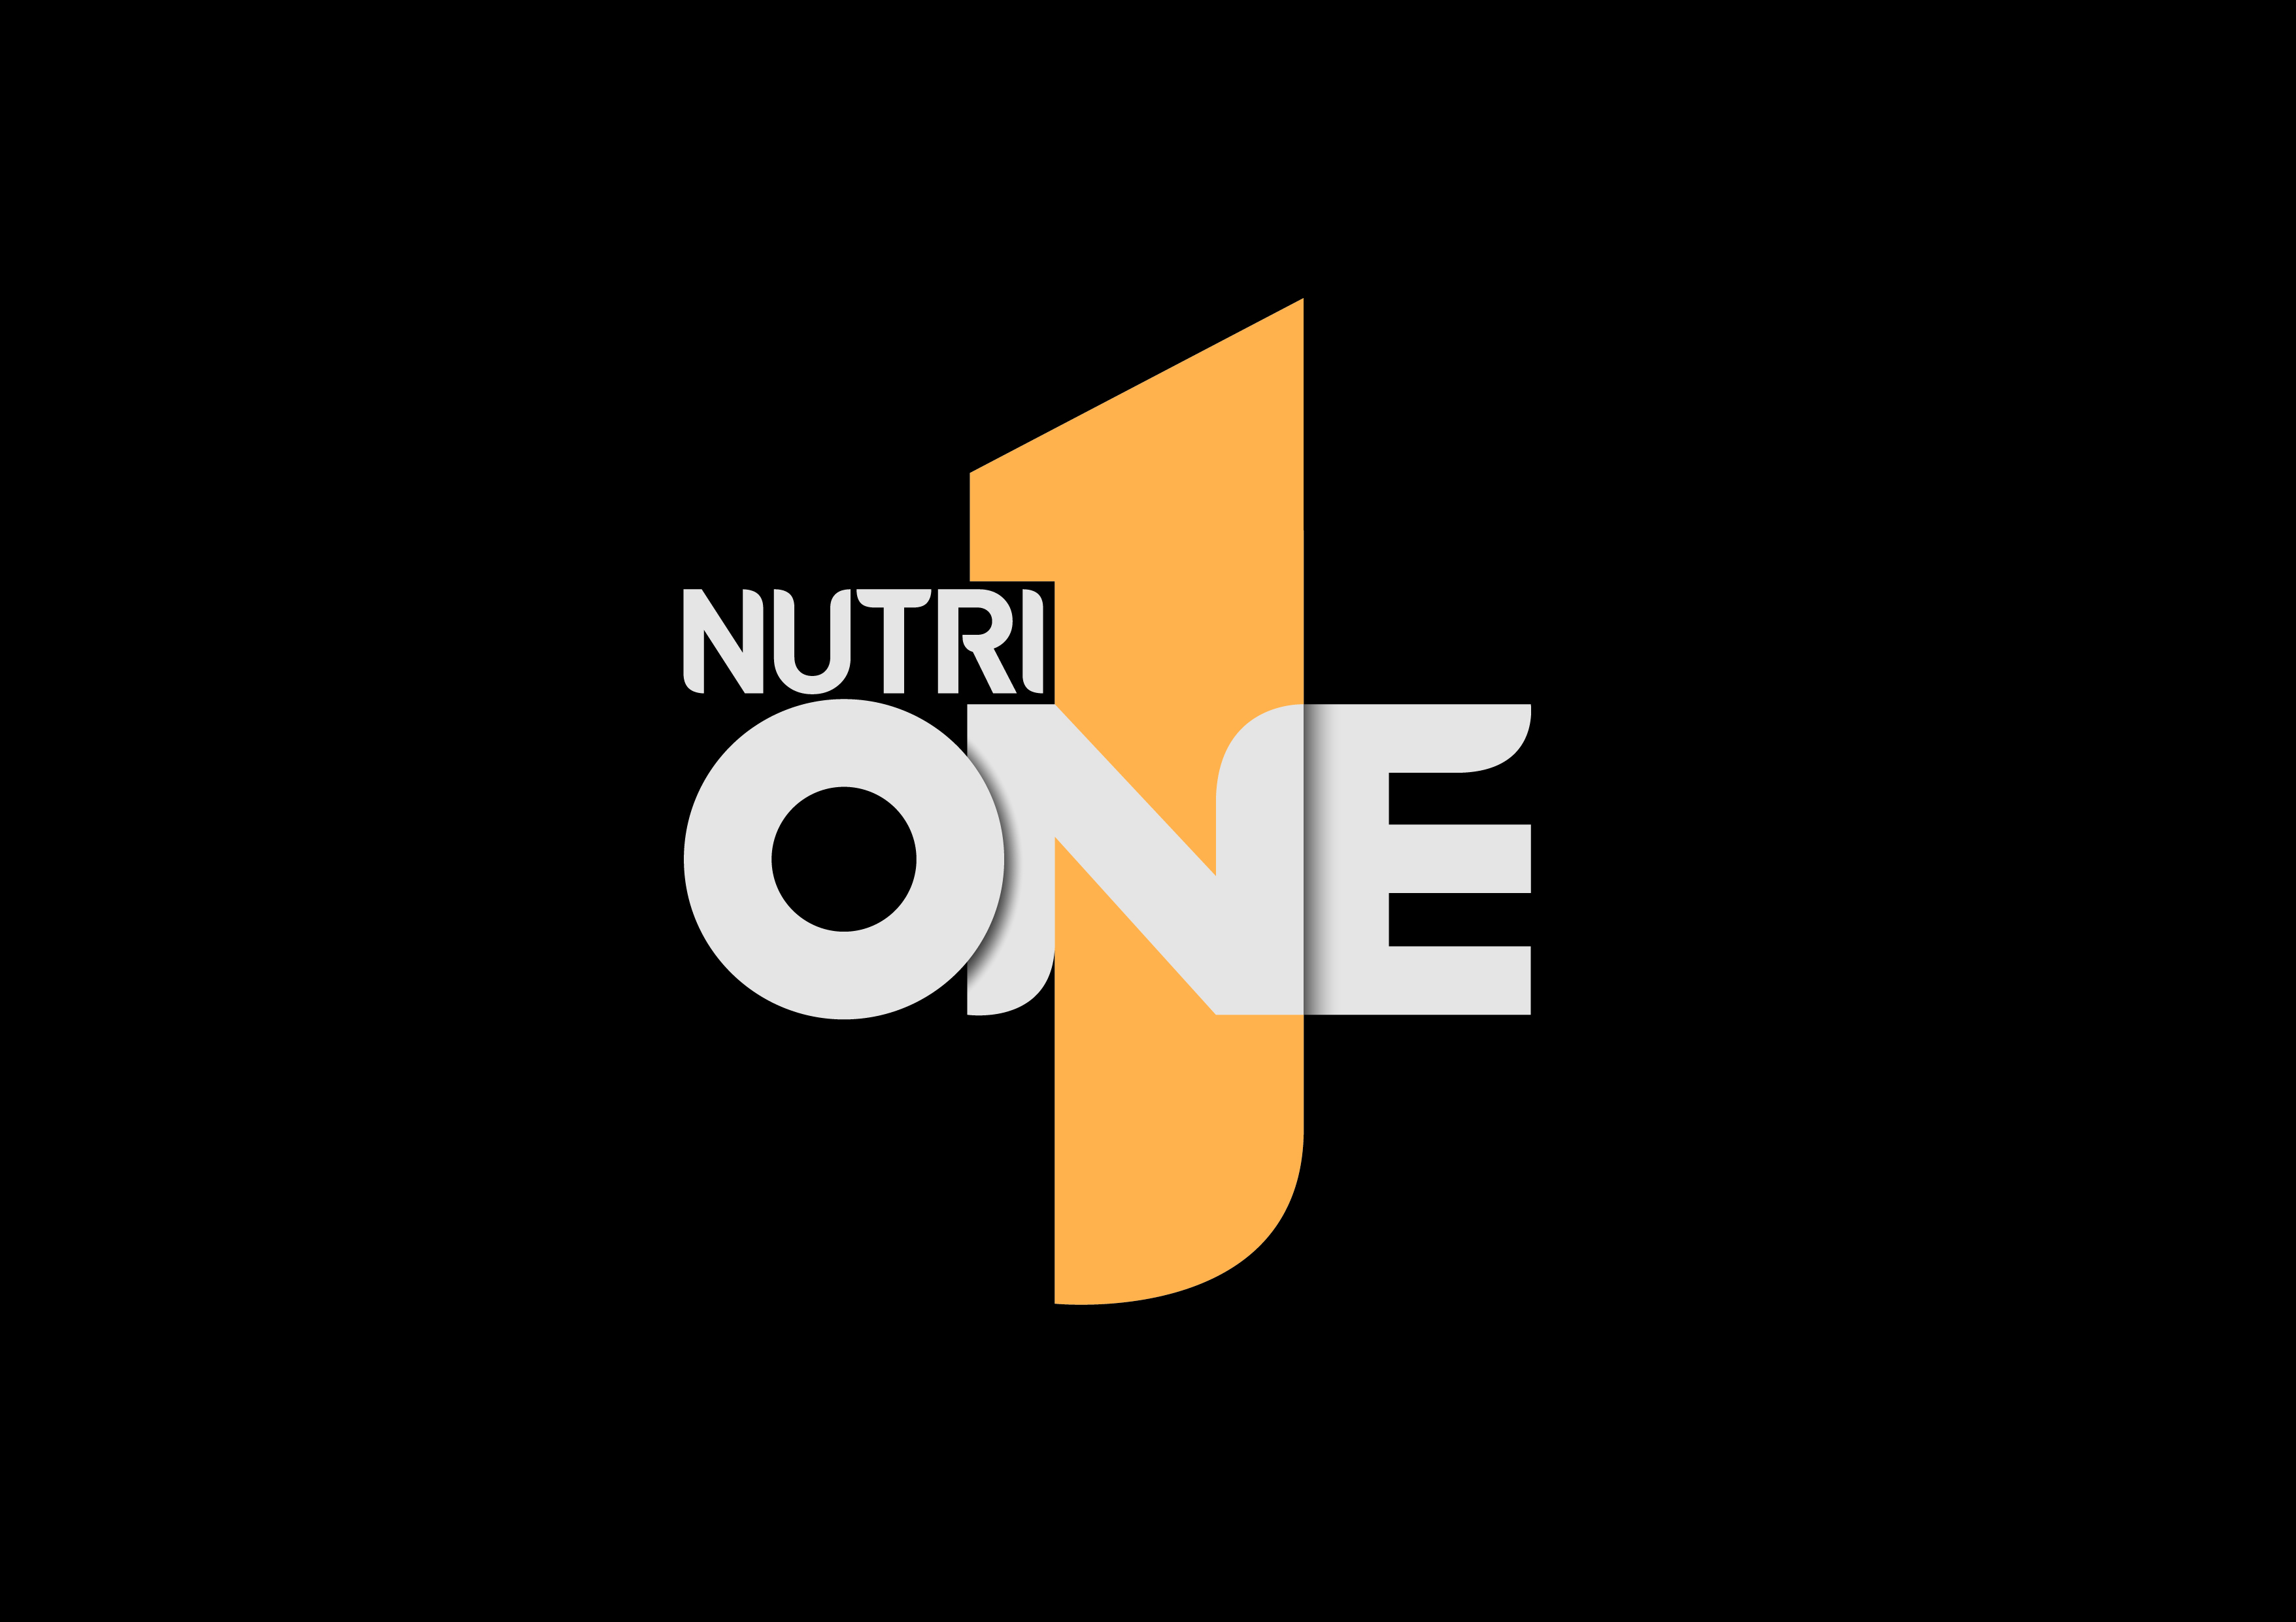 Nutri One